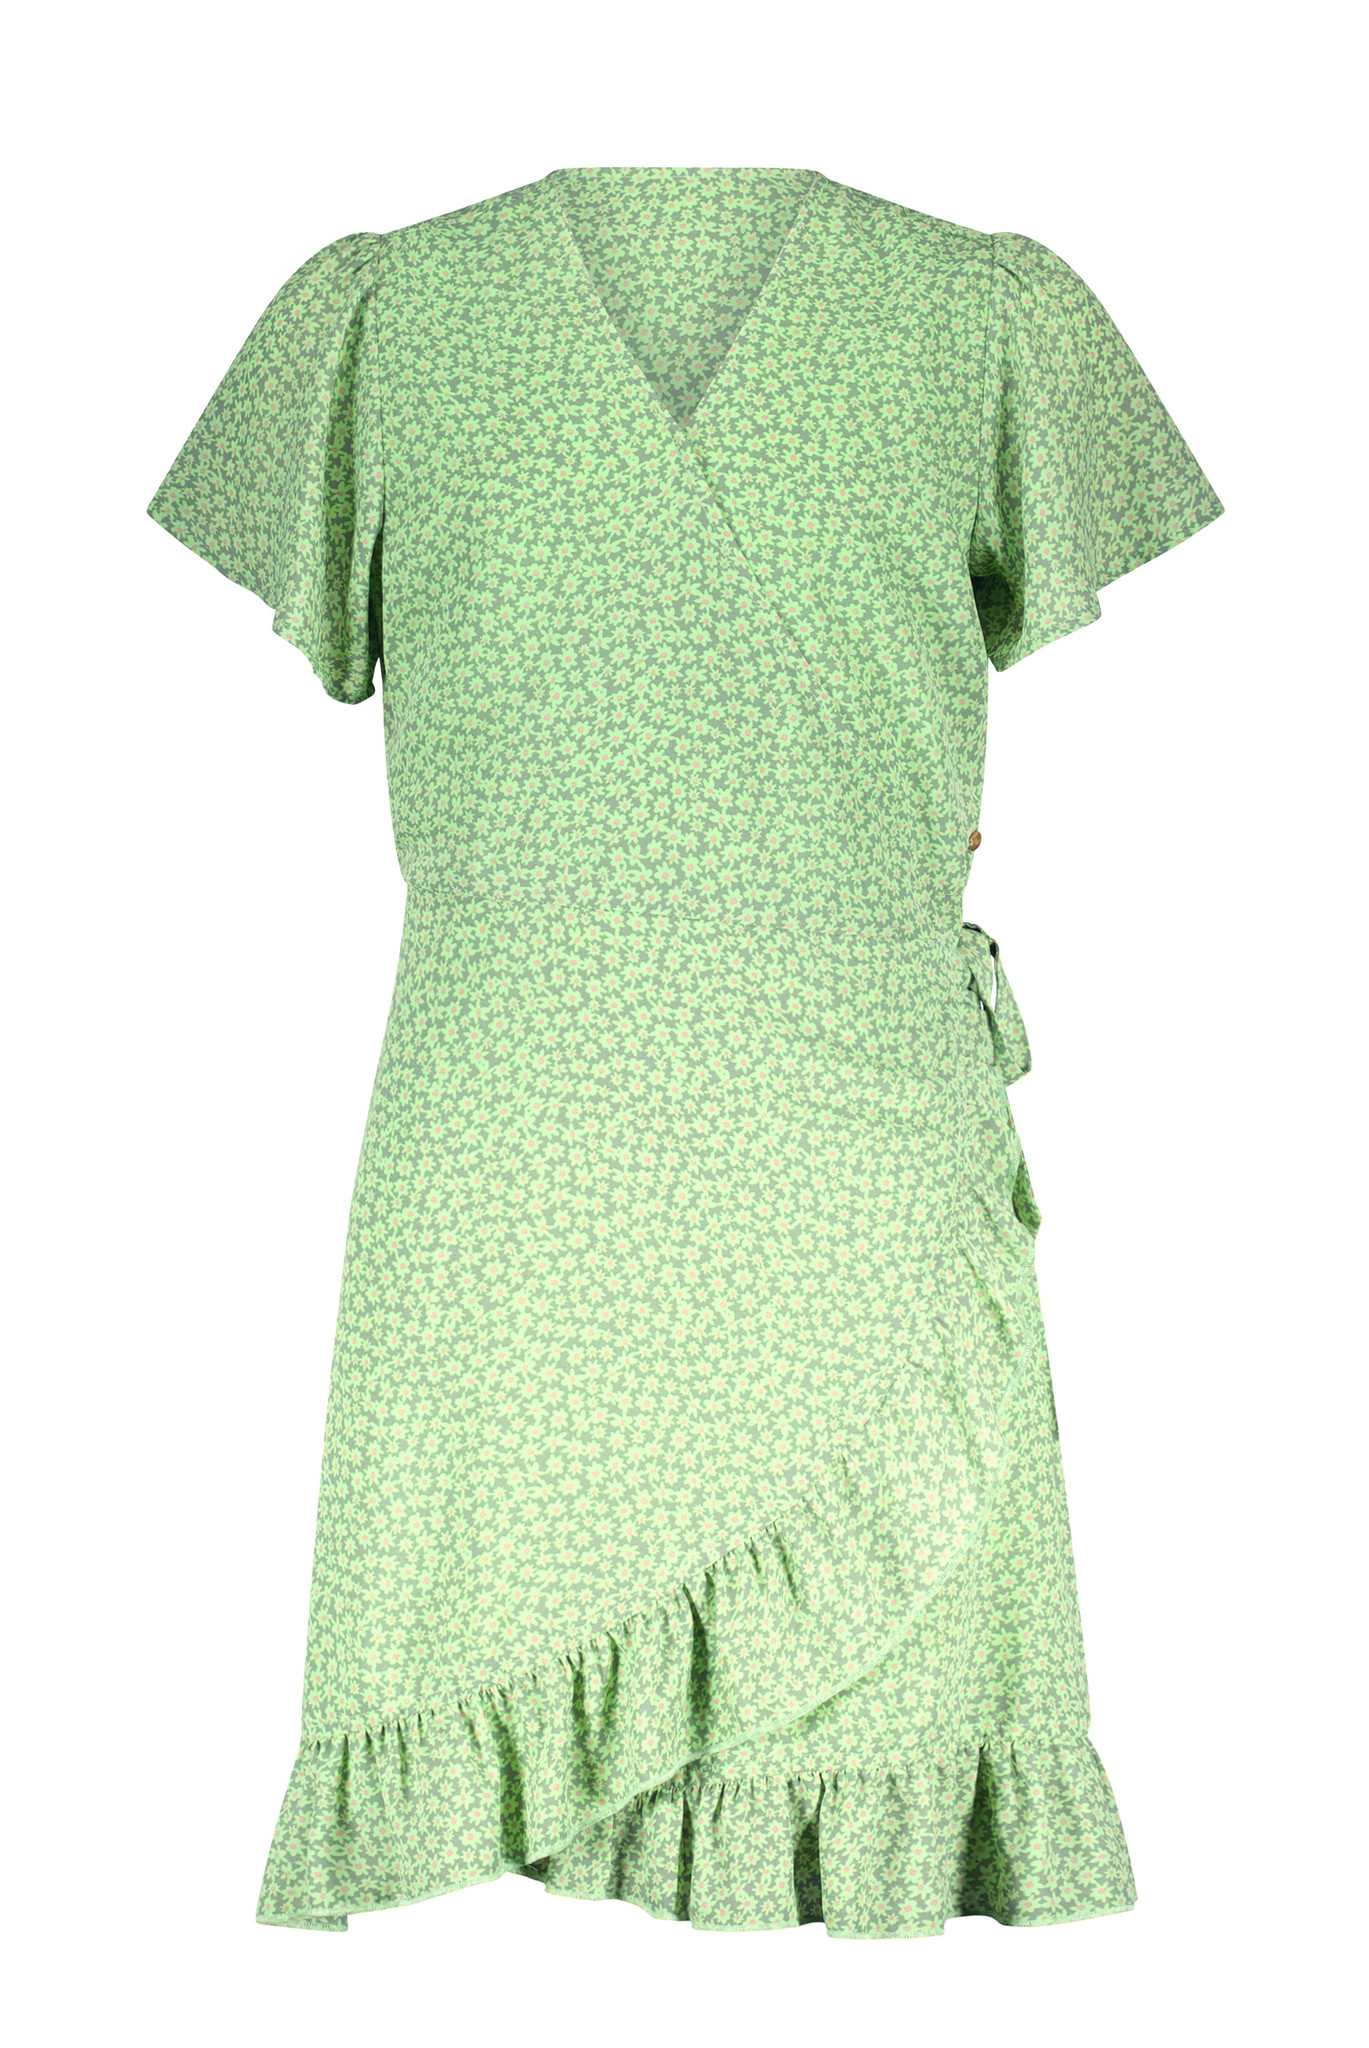 NoBell Meisjes jurk - MorlyB - Smaragd